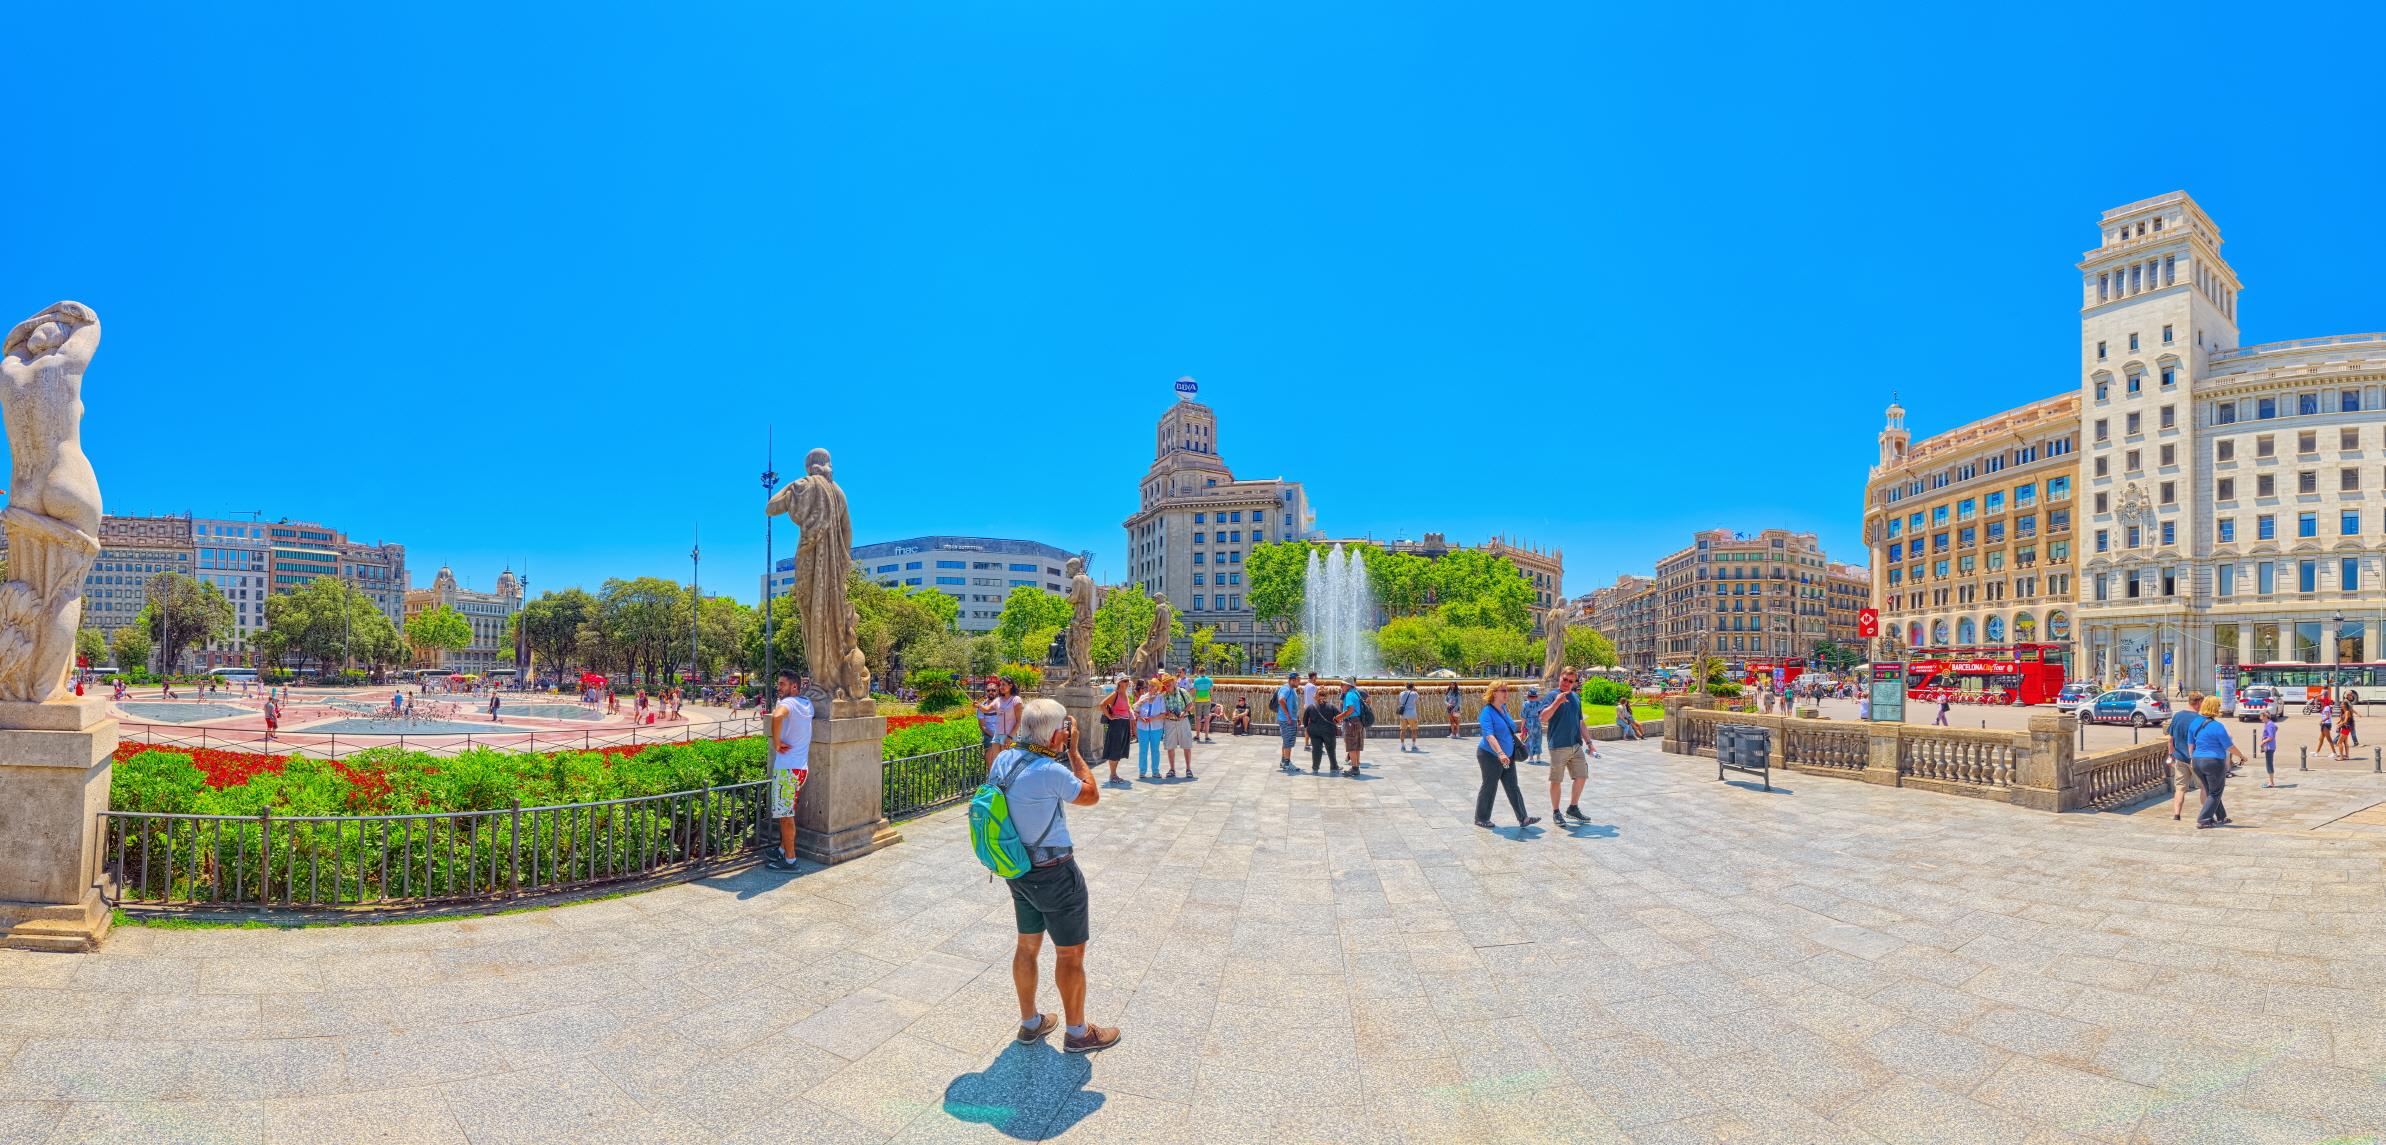 까딸루냐 광장  Plaza de Cataluna